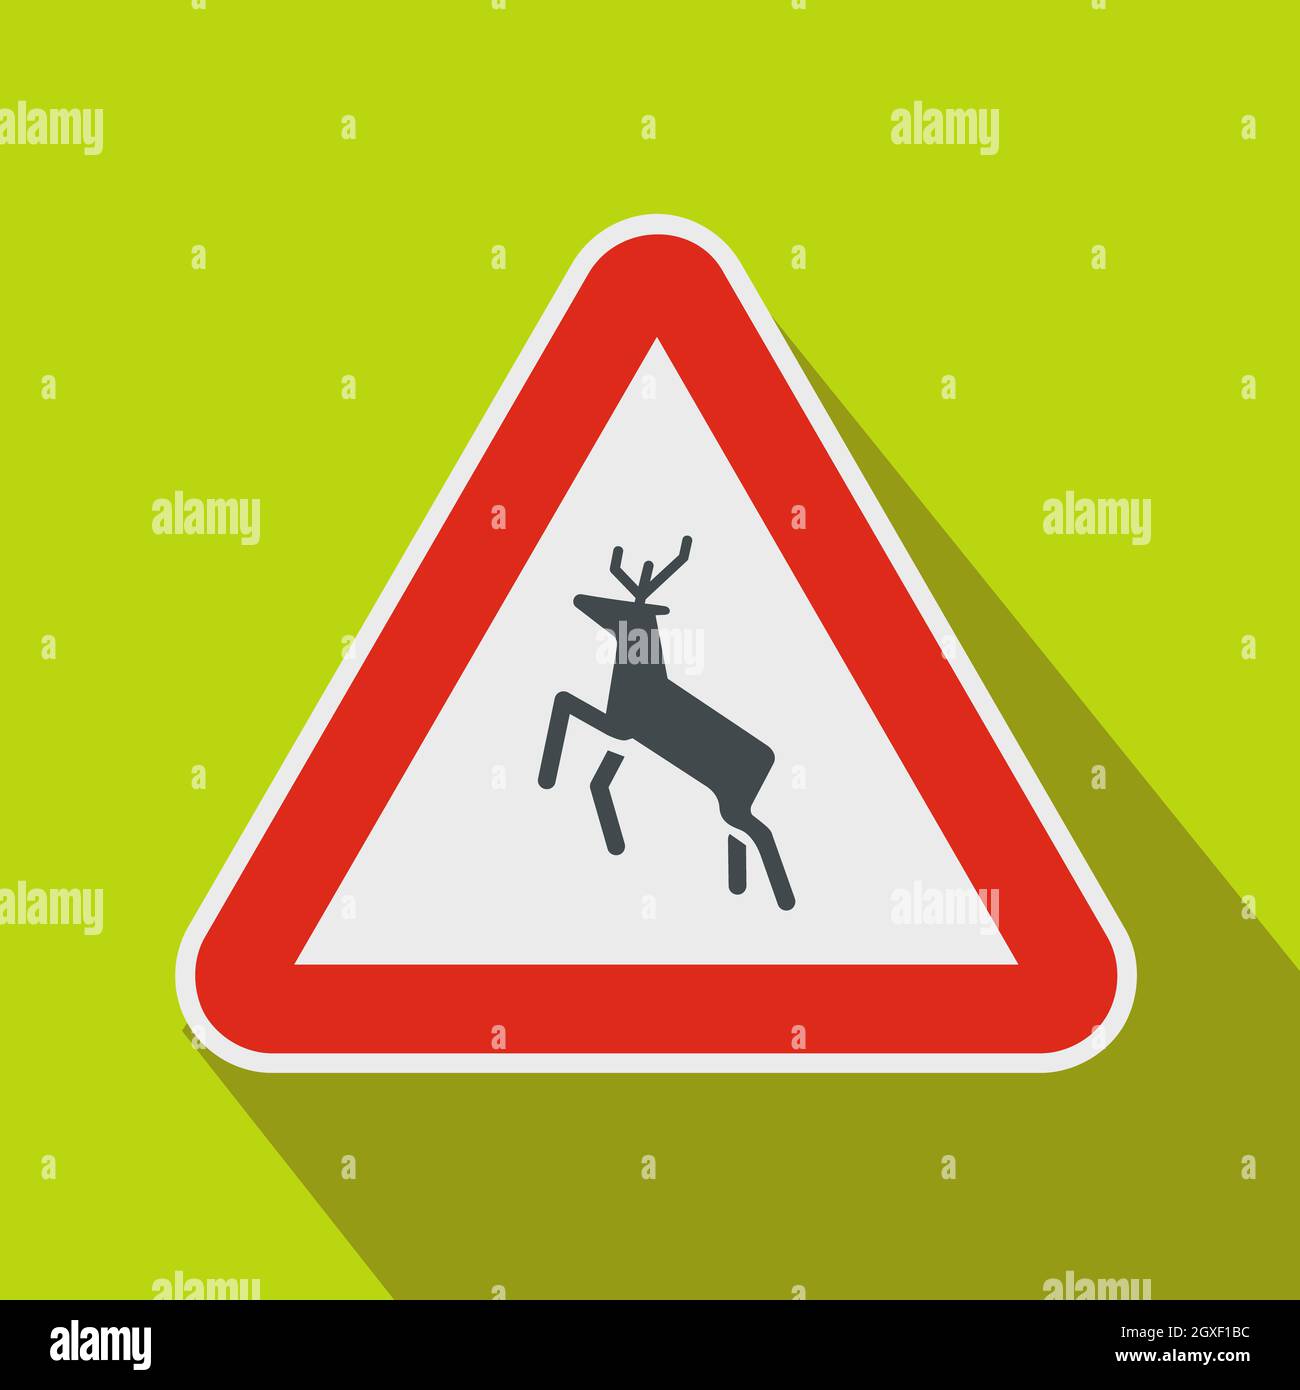 Осторожно олени. Знак олень в треугольнике. Дорожный знак олень в треугольнике. Предупреждающий знак олень название. Необычные знаки дорожного движения олень на велосипеде.